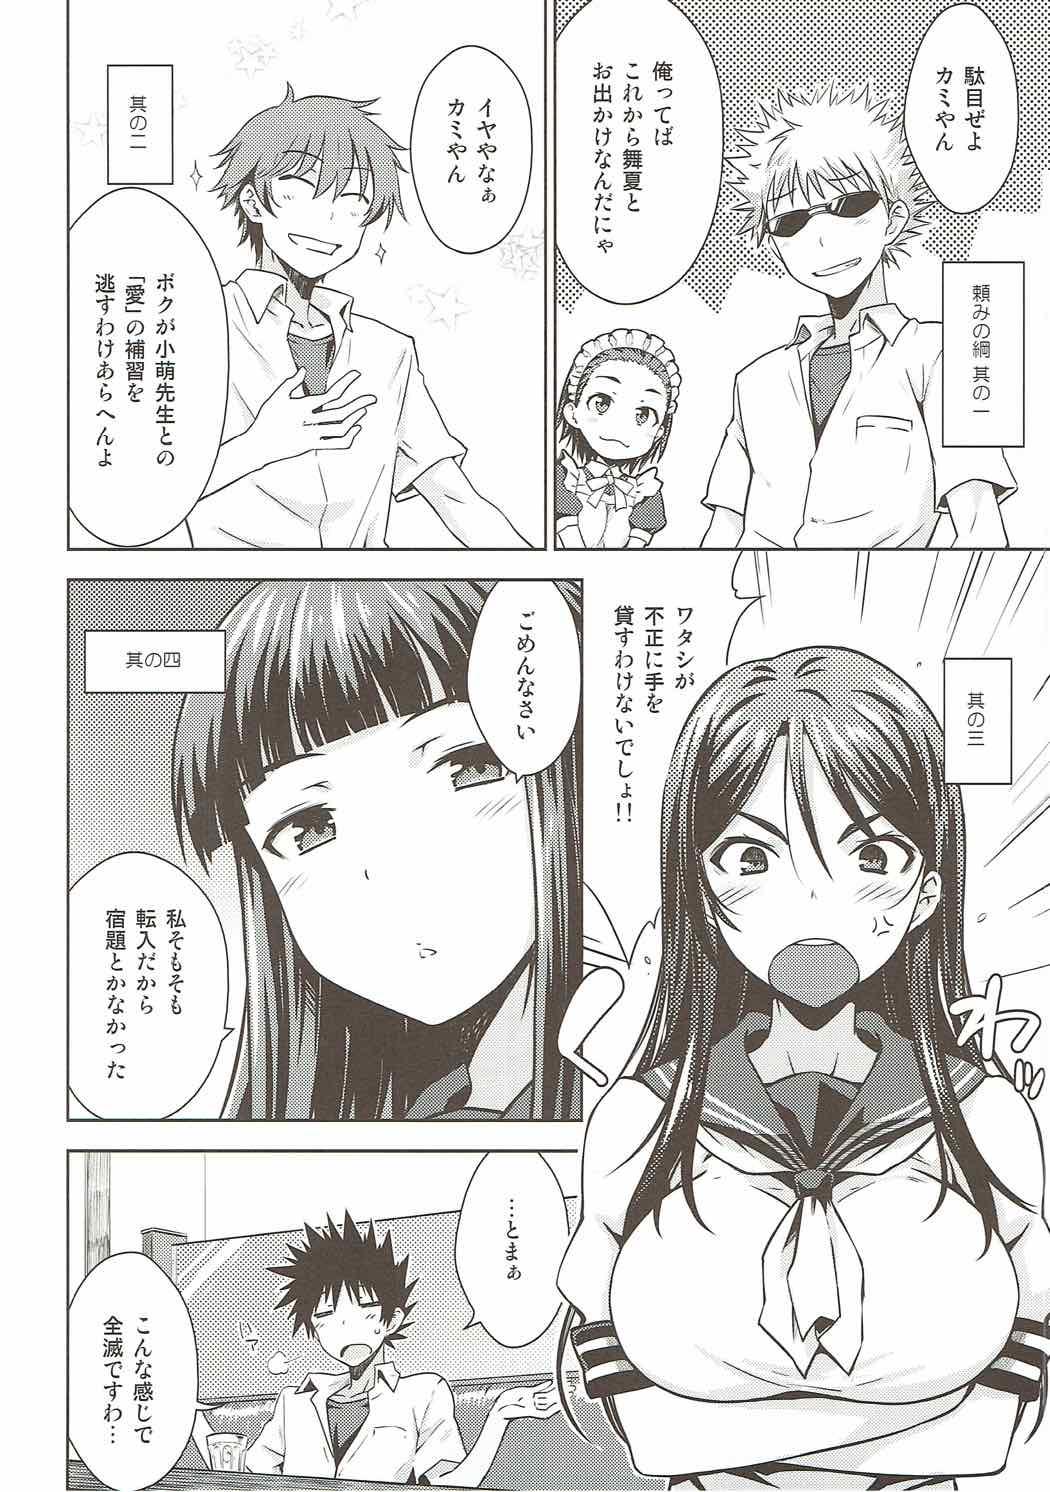 Flash Natsuyasumi no Shukudai - Toaru kagaku no railgun Secretary - Page 5